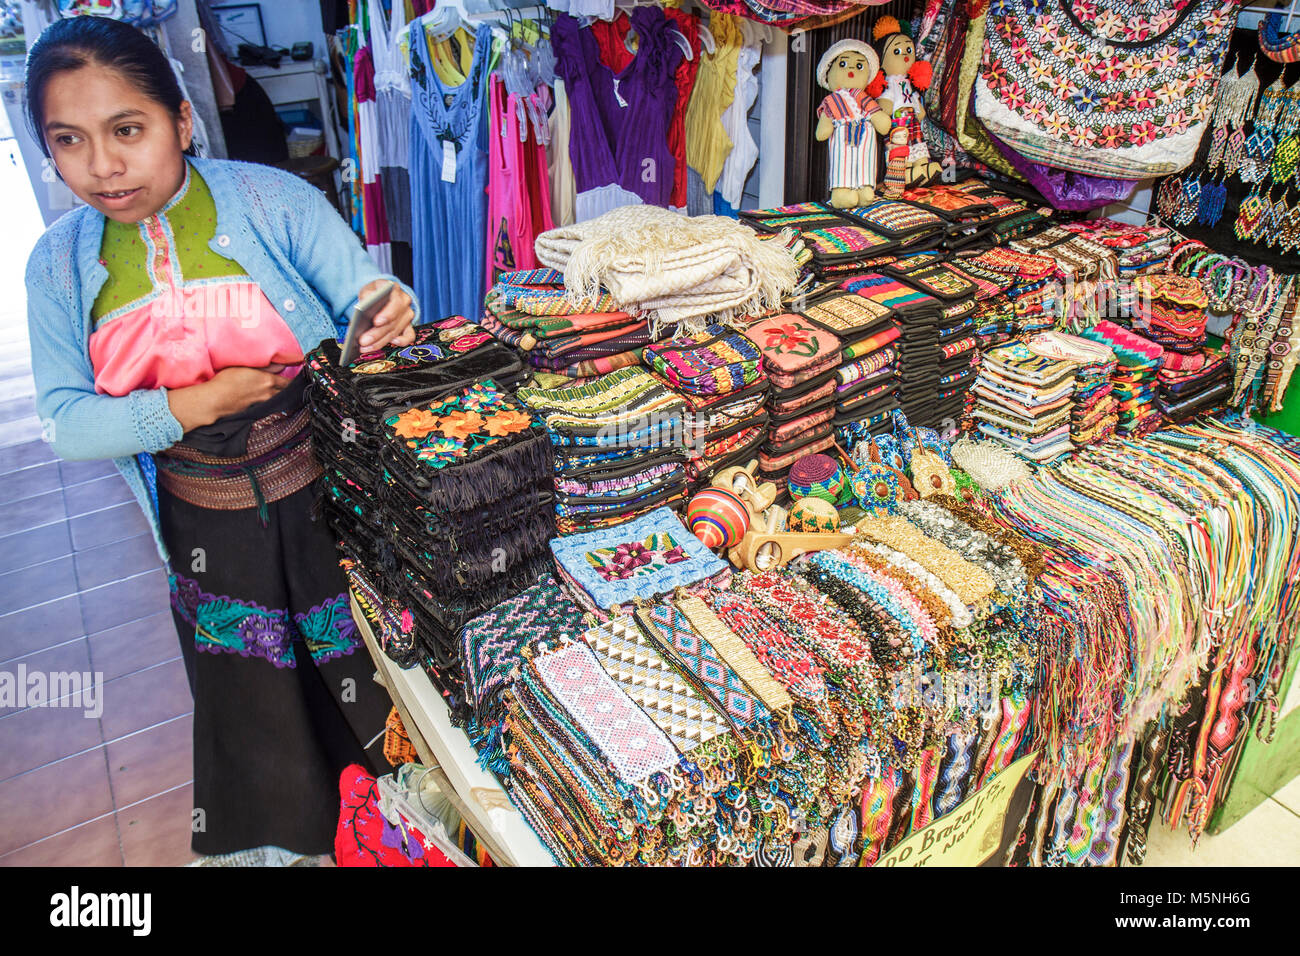 Cancun Mexique,Mexican Beach,Hotel zone,Avenida Kukulkan,femme hispanique femmes,marchand employé,boutique de cadeaux,souvenir,Chiapas natif,shopping shopp Banque D'Images